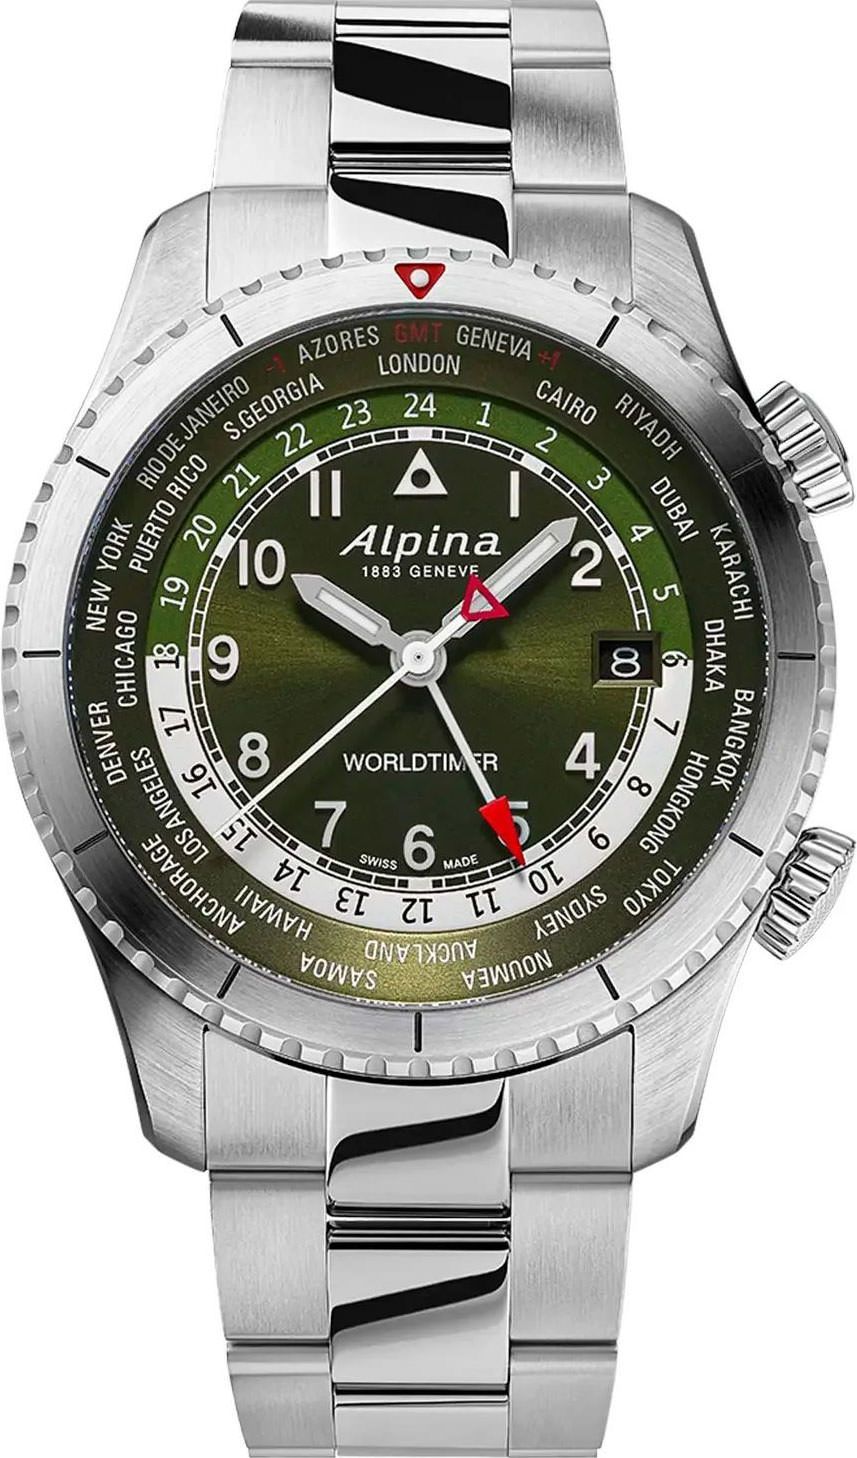 Alpina Startimer  Green Dial 41 mm Quartz Watch For Men - 1